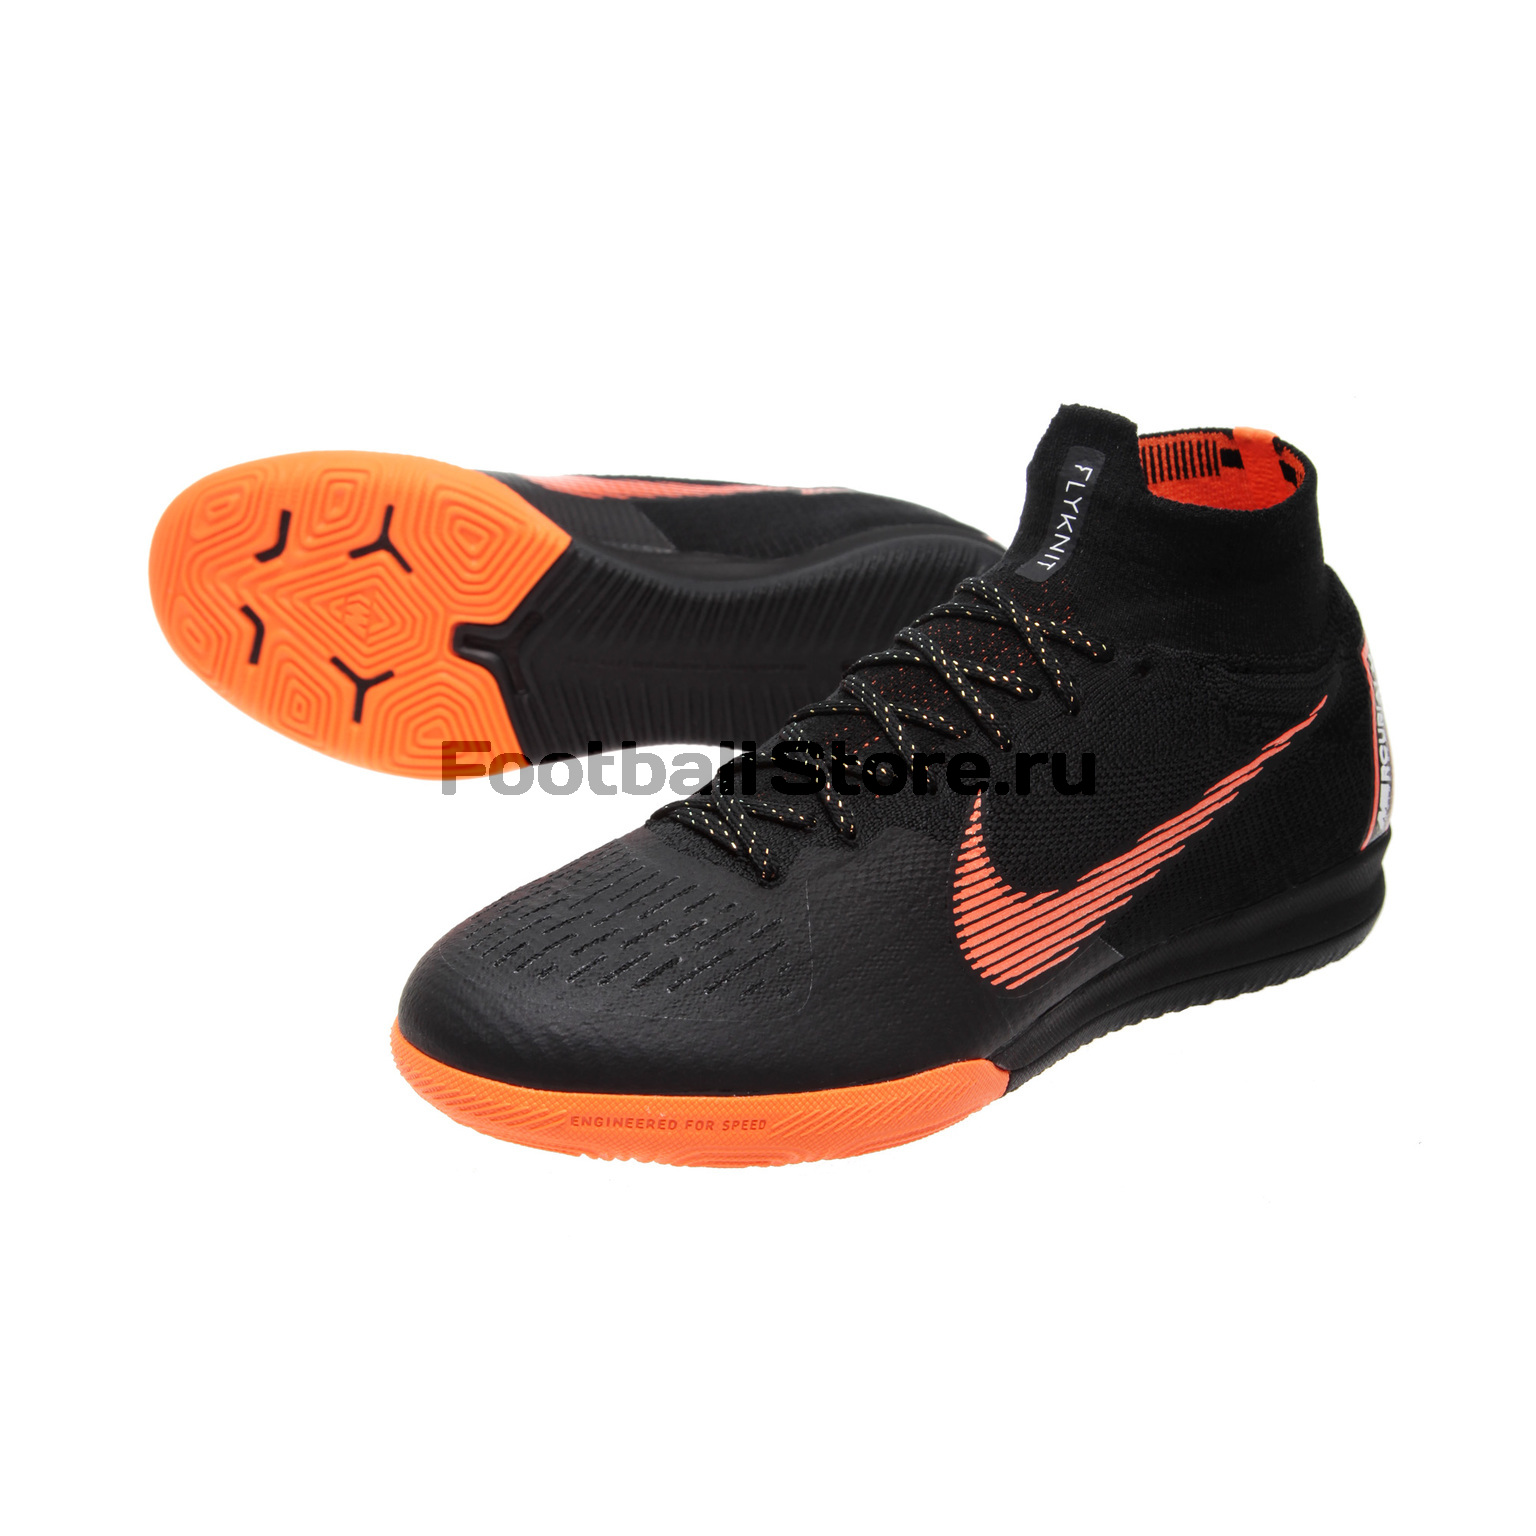 Обувь для зала Nike SuperflyX 6 Elite IC AH7373-081